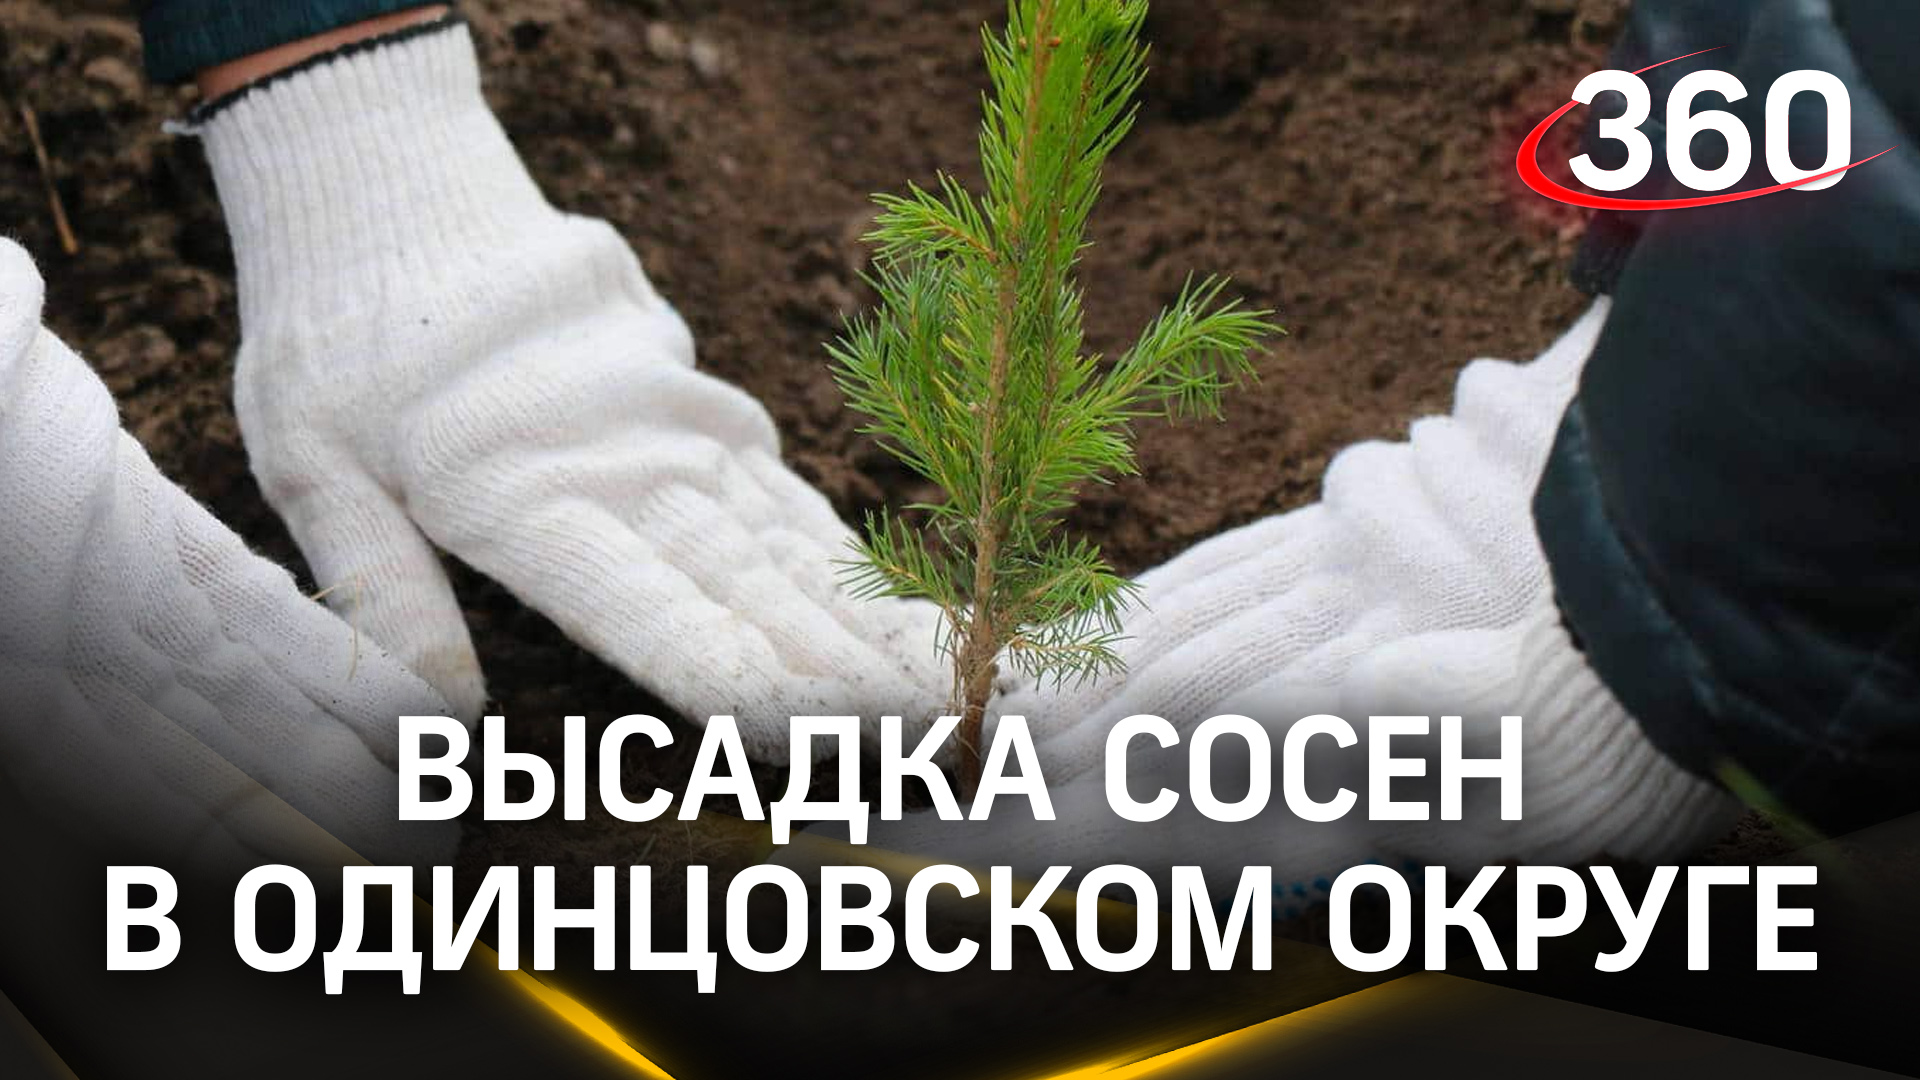 Более 100 человек поучаствовали в высадке сосен в Одинцовском округе

Для участка в Кубинке подготов